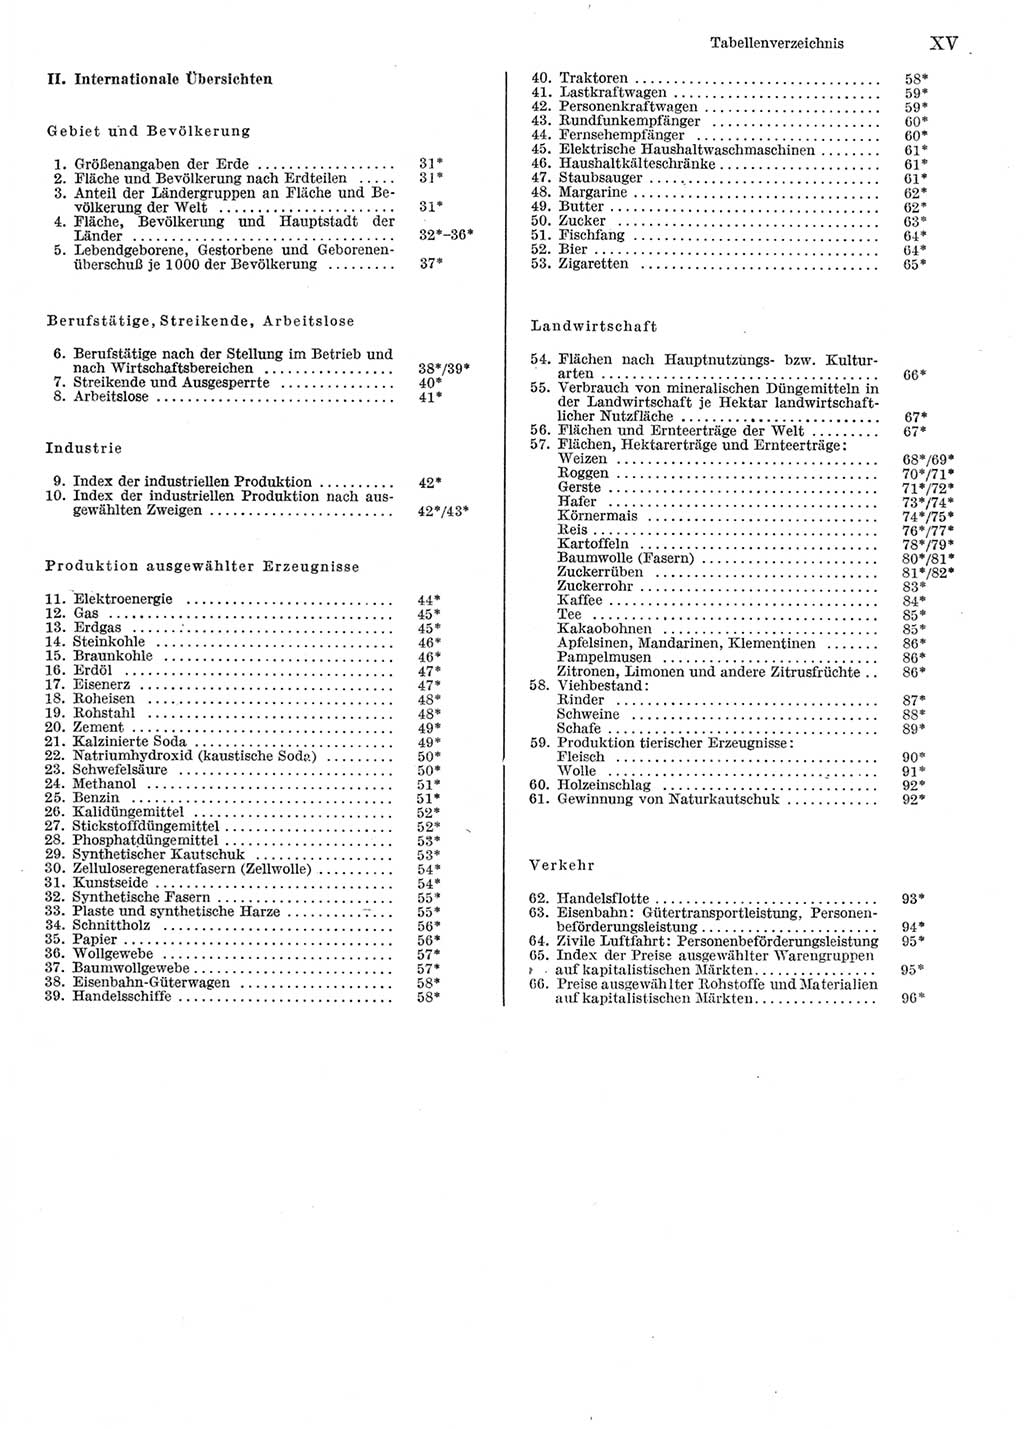 Statistisches Jahrbuch der Deutschen Demokratischen Republik (DDR) 1981, Seite 15 (Stat. Jb. DDR 1981, S. 15)